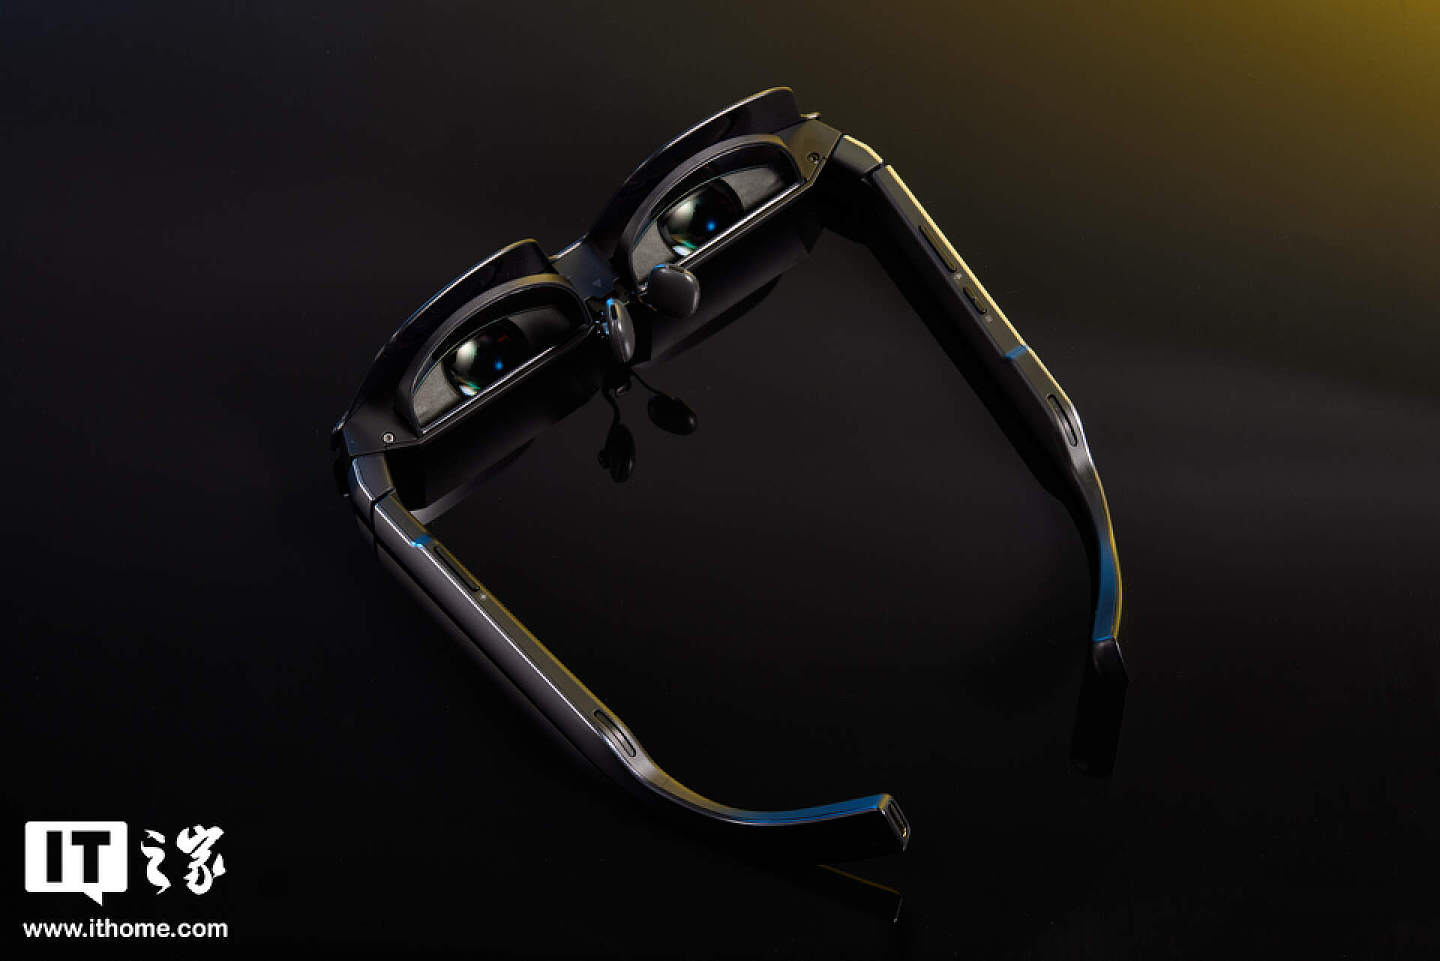 【IT之家开箱】201 英寸巨屏躺着看：雷鸟 Air 2s 智能眼镜图赏 - 7